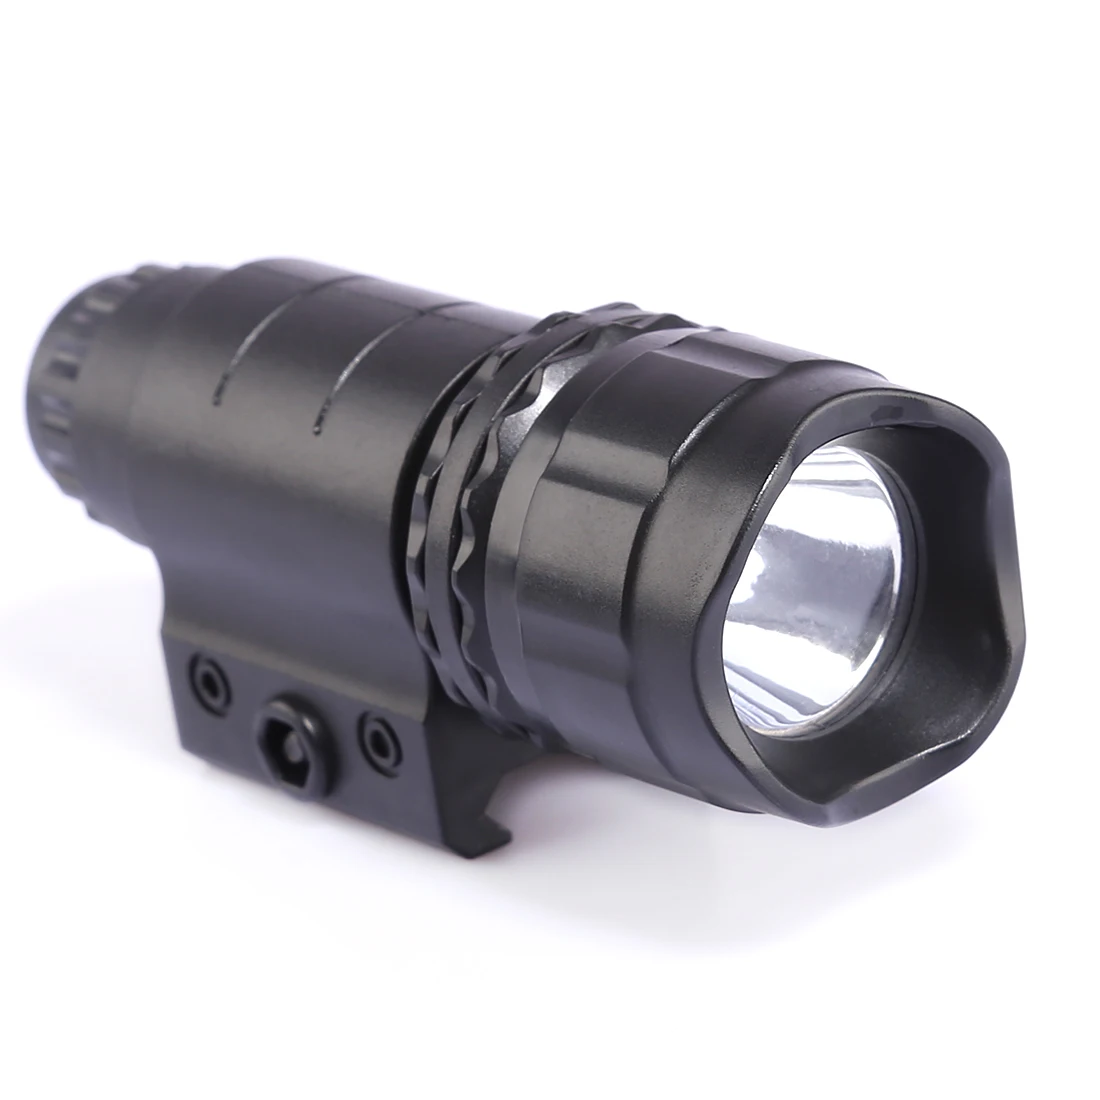 Tactical Flash Light for the NERF Blaster NERF-Blaster LED Taschenlampe 